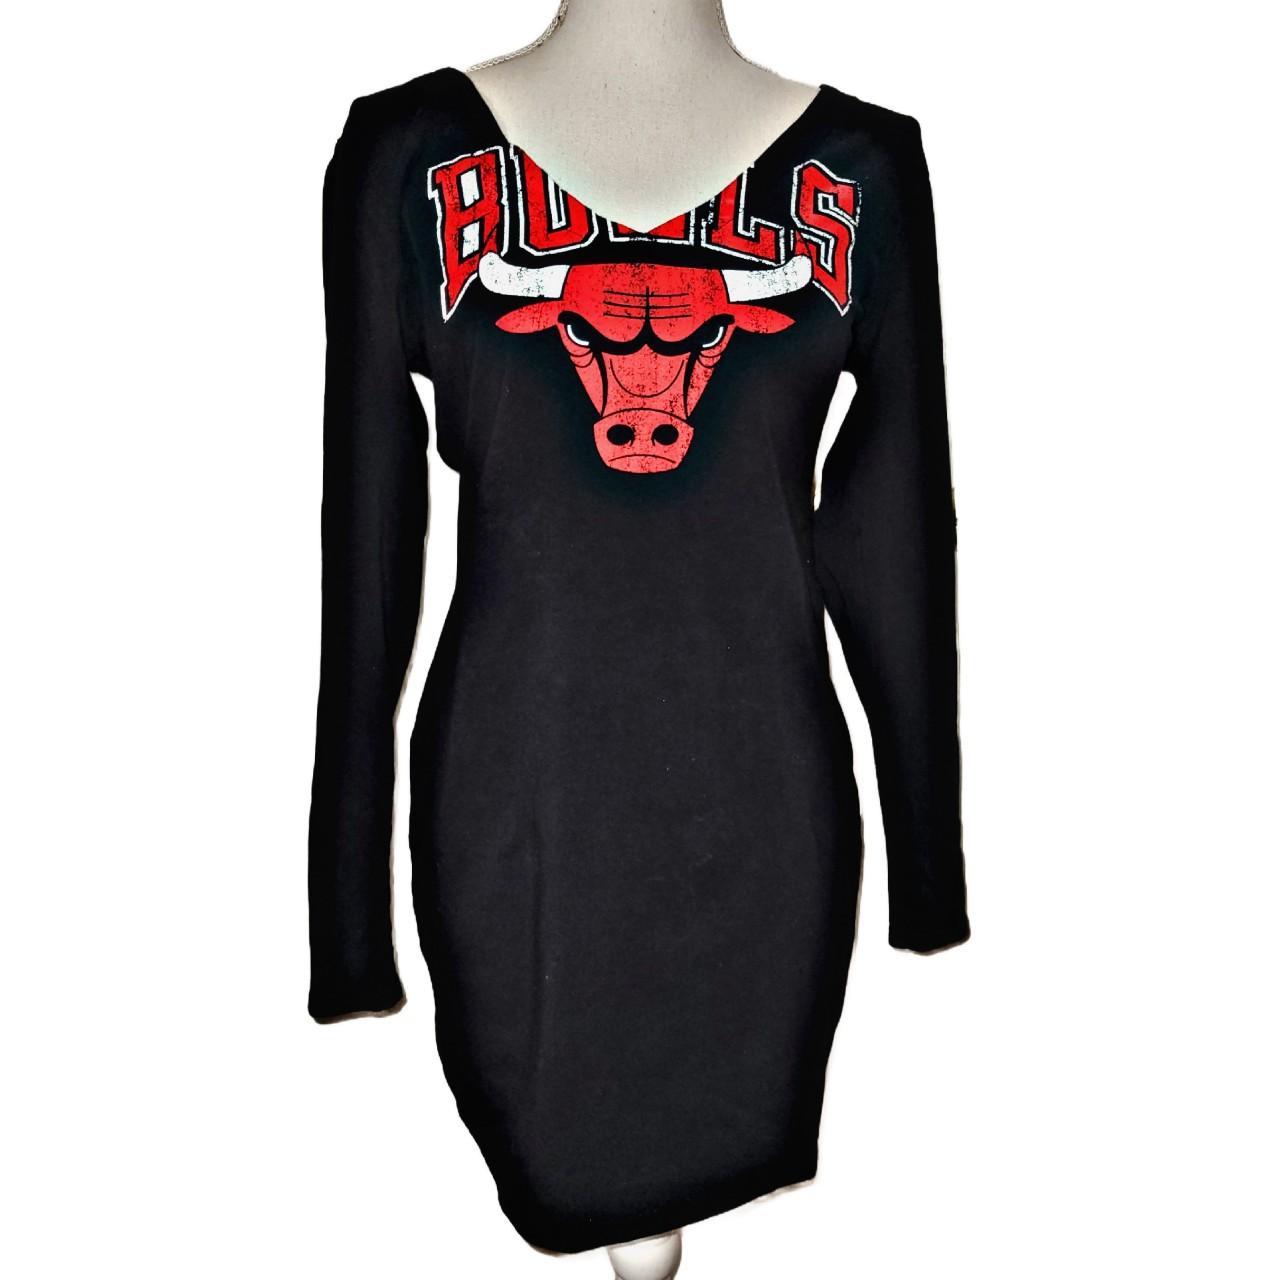 chicago bulls women's jersey dress